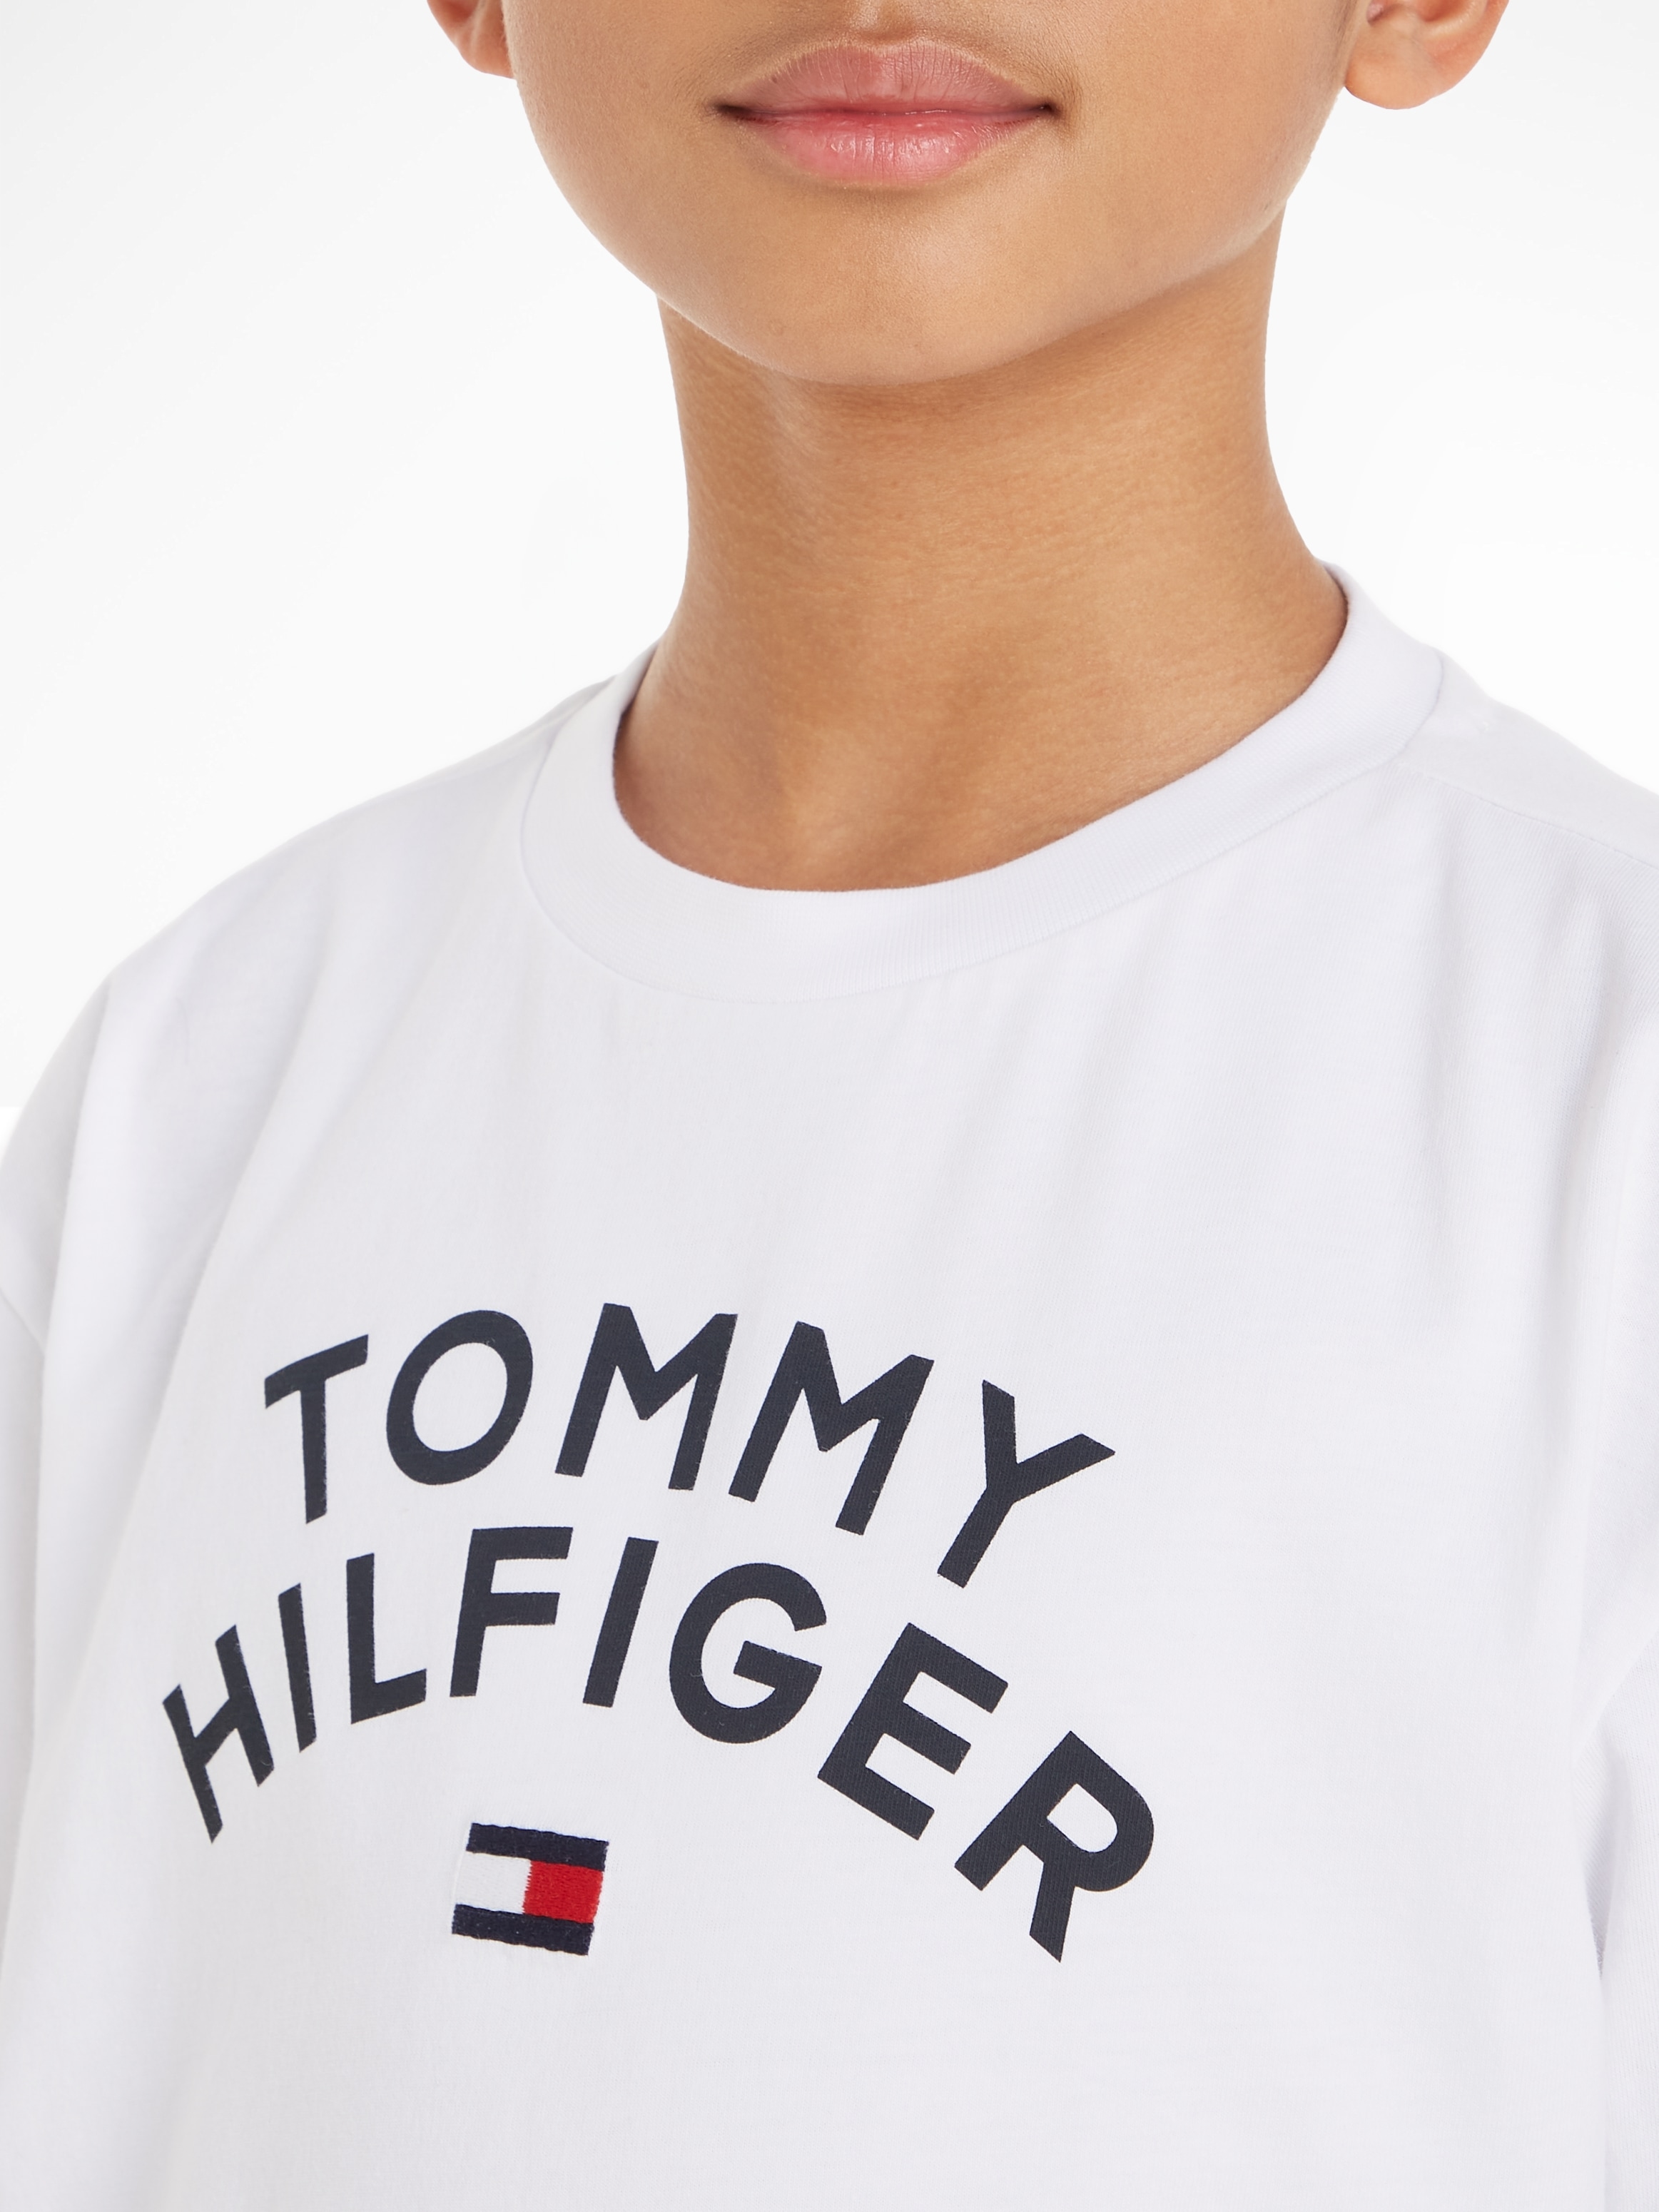 Trendige Tommy Hilfiger T-Shirt - shoppen versandkostenfrei FLAG »TOMMY HILFIGER ohne TEE« Mindestbestellwert